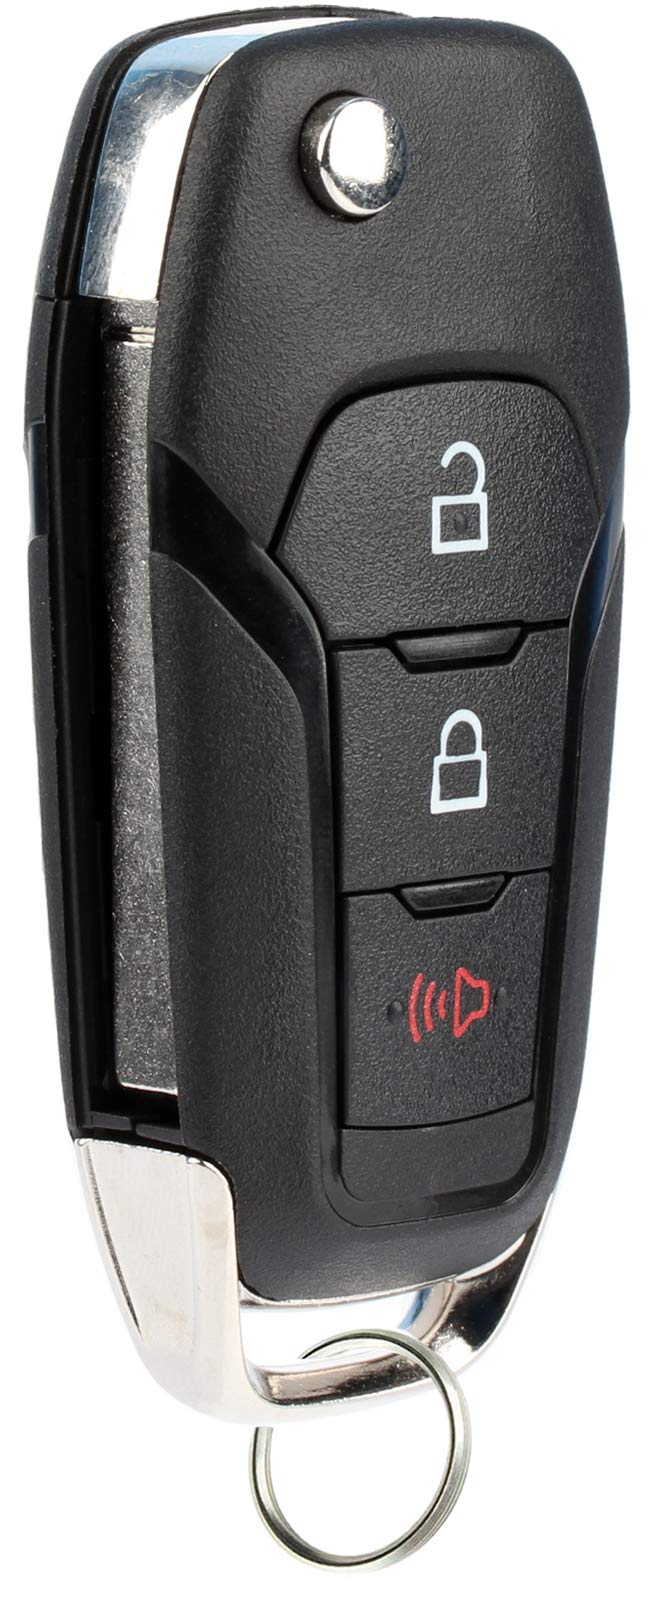  [AUSTRALIA] - KeylessOption Keyless Entry Car Remote Uncut Ignition Flip Key Fob for Ford F150 F250 N5F-A08TAA 1x